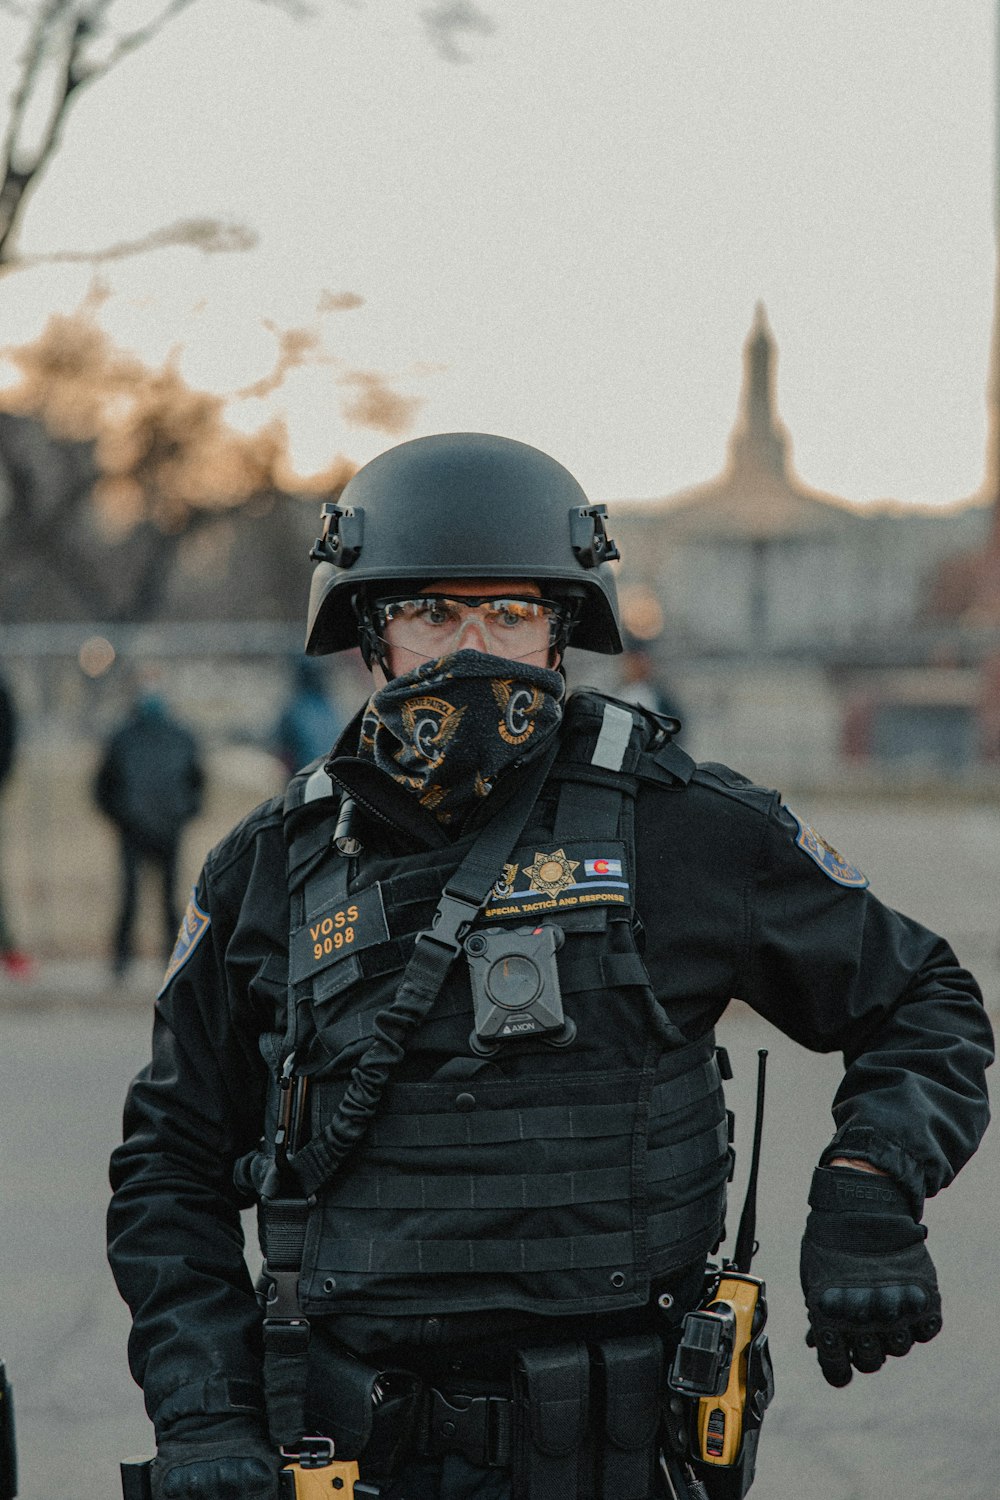 man in black police uniform wearing helmet